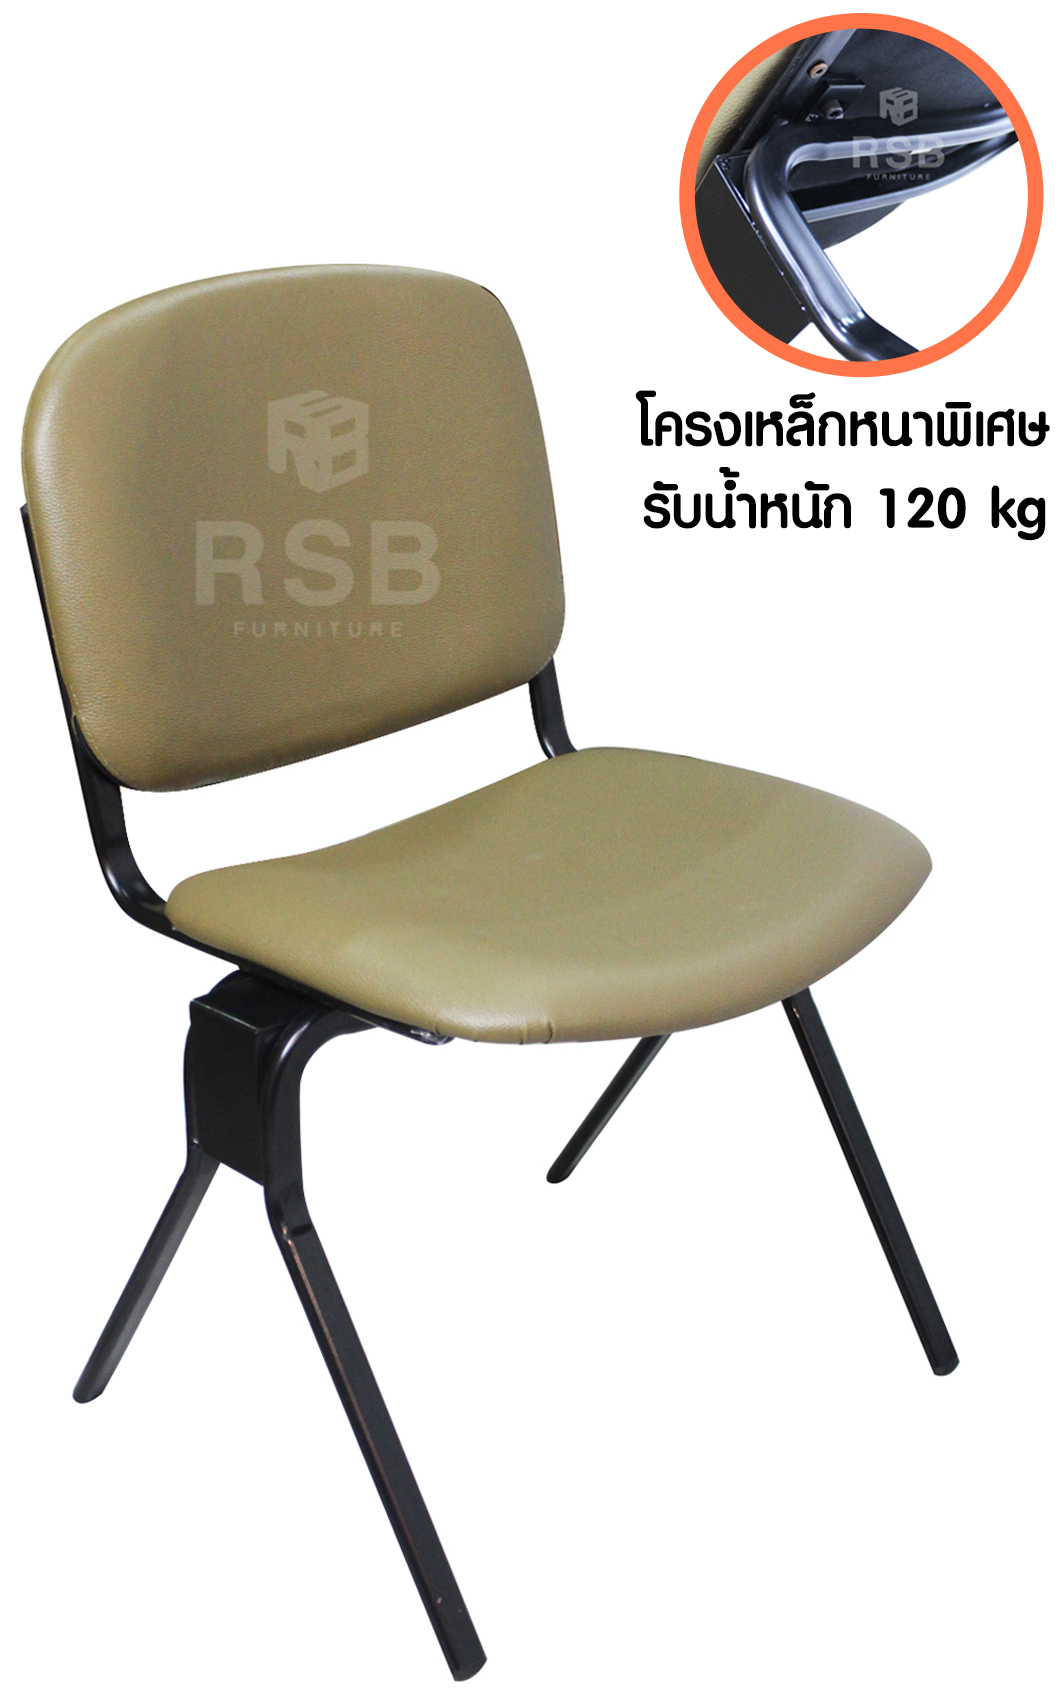 เก้าอี้สำนักงาน ขาเหล็กหนาพิเศษ รับน้ำหนัก 120 KG รหัส 2443